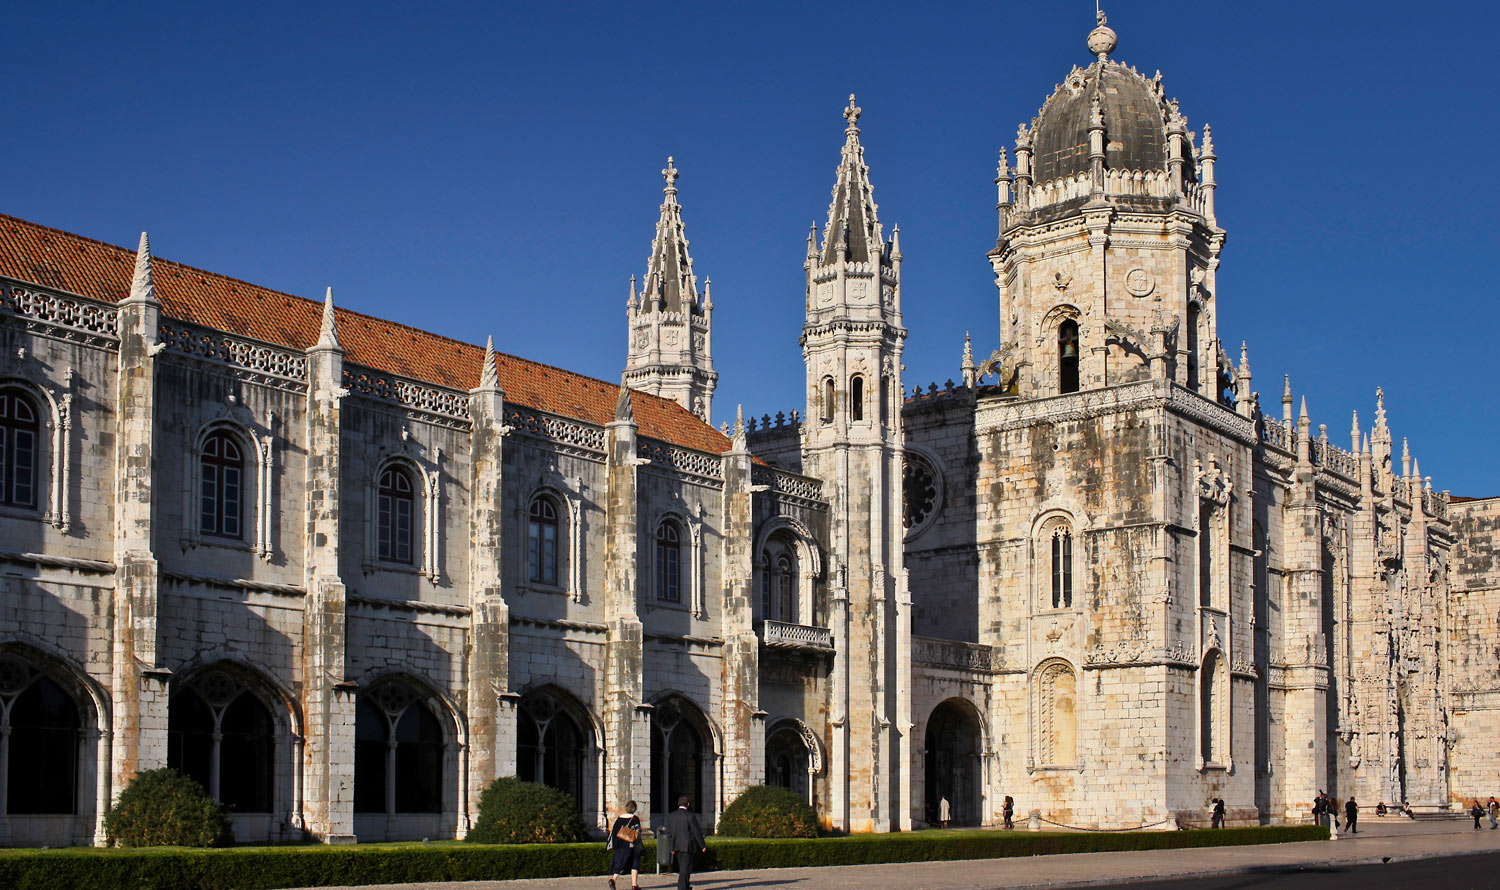 Mosteiro dos Jerónimos (Monastère des Hiéronymites)